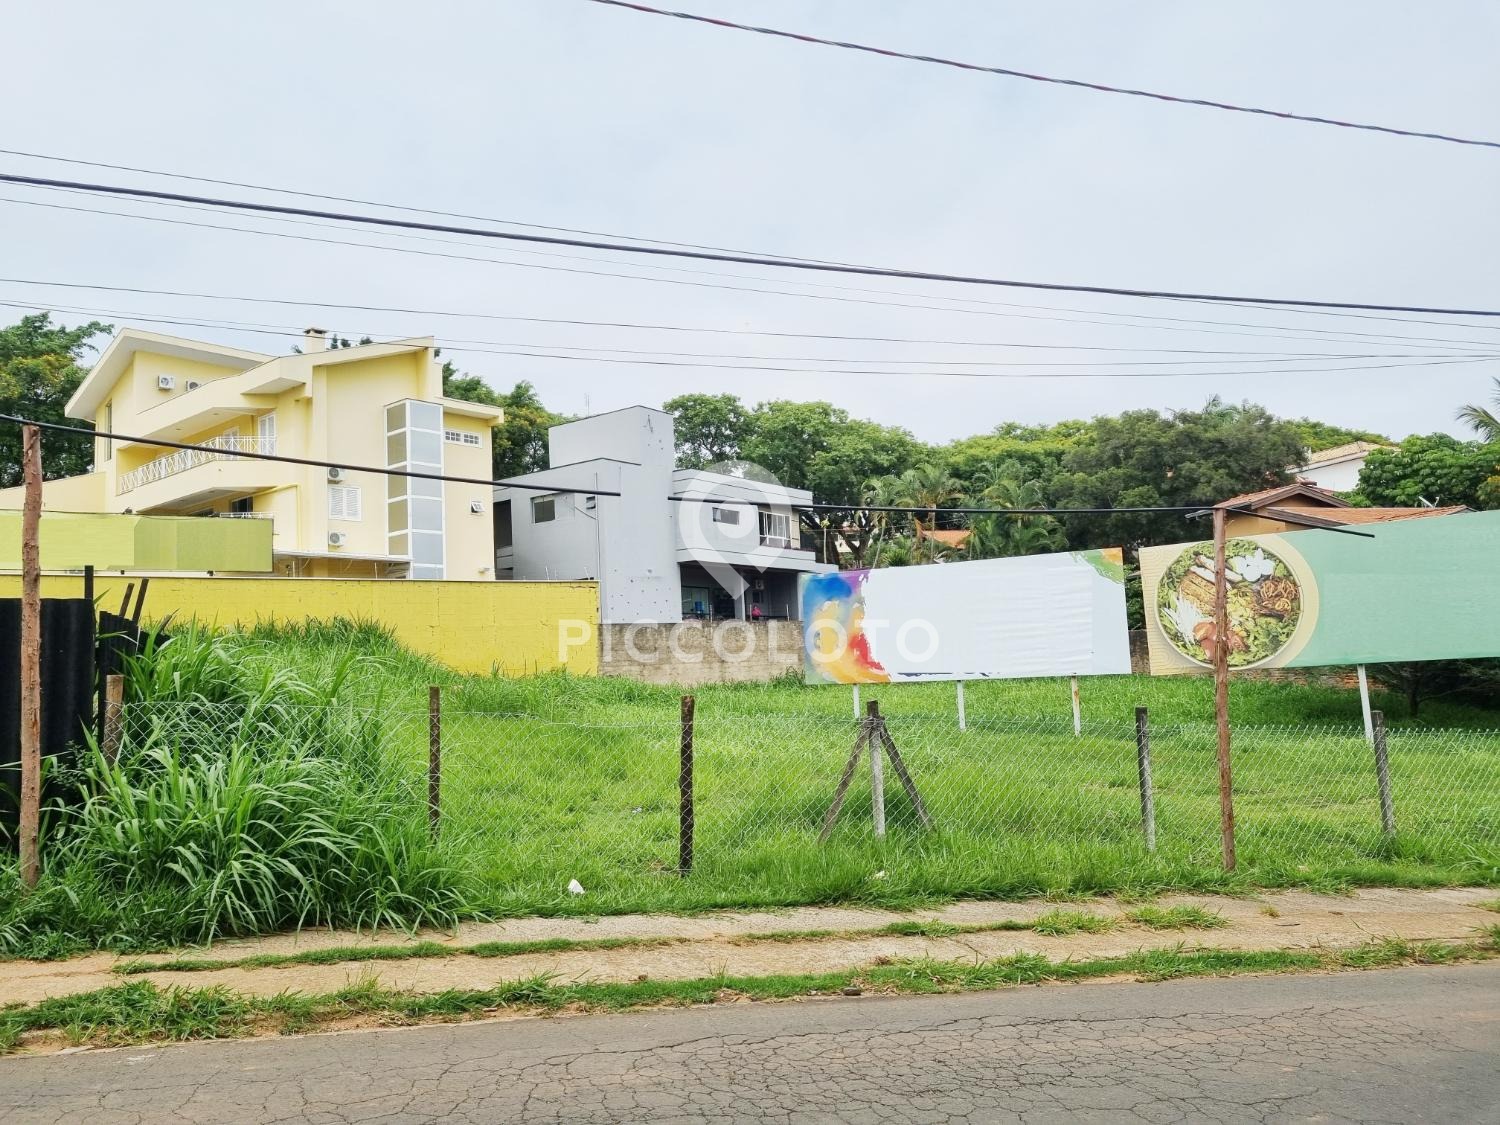 Piccoloto -Terreno à venda no Bairro das Palmeiras em Campinas